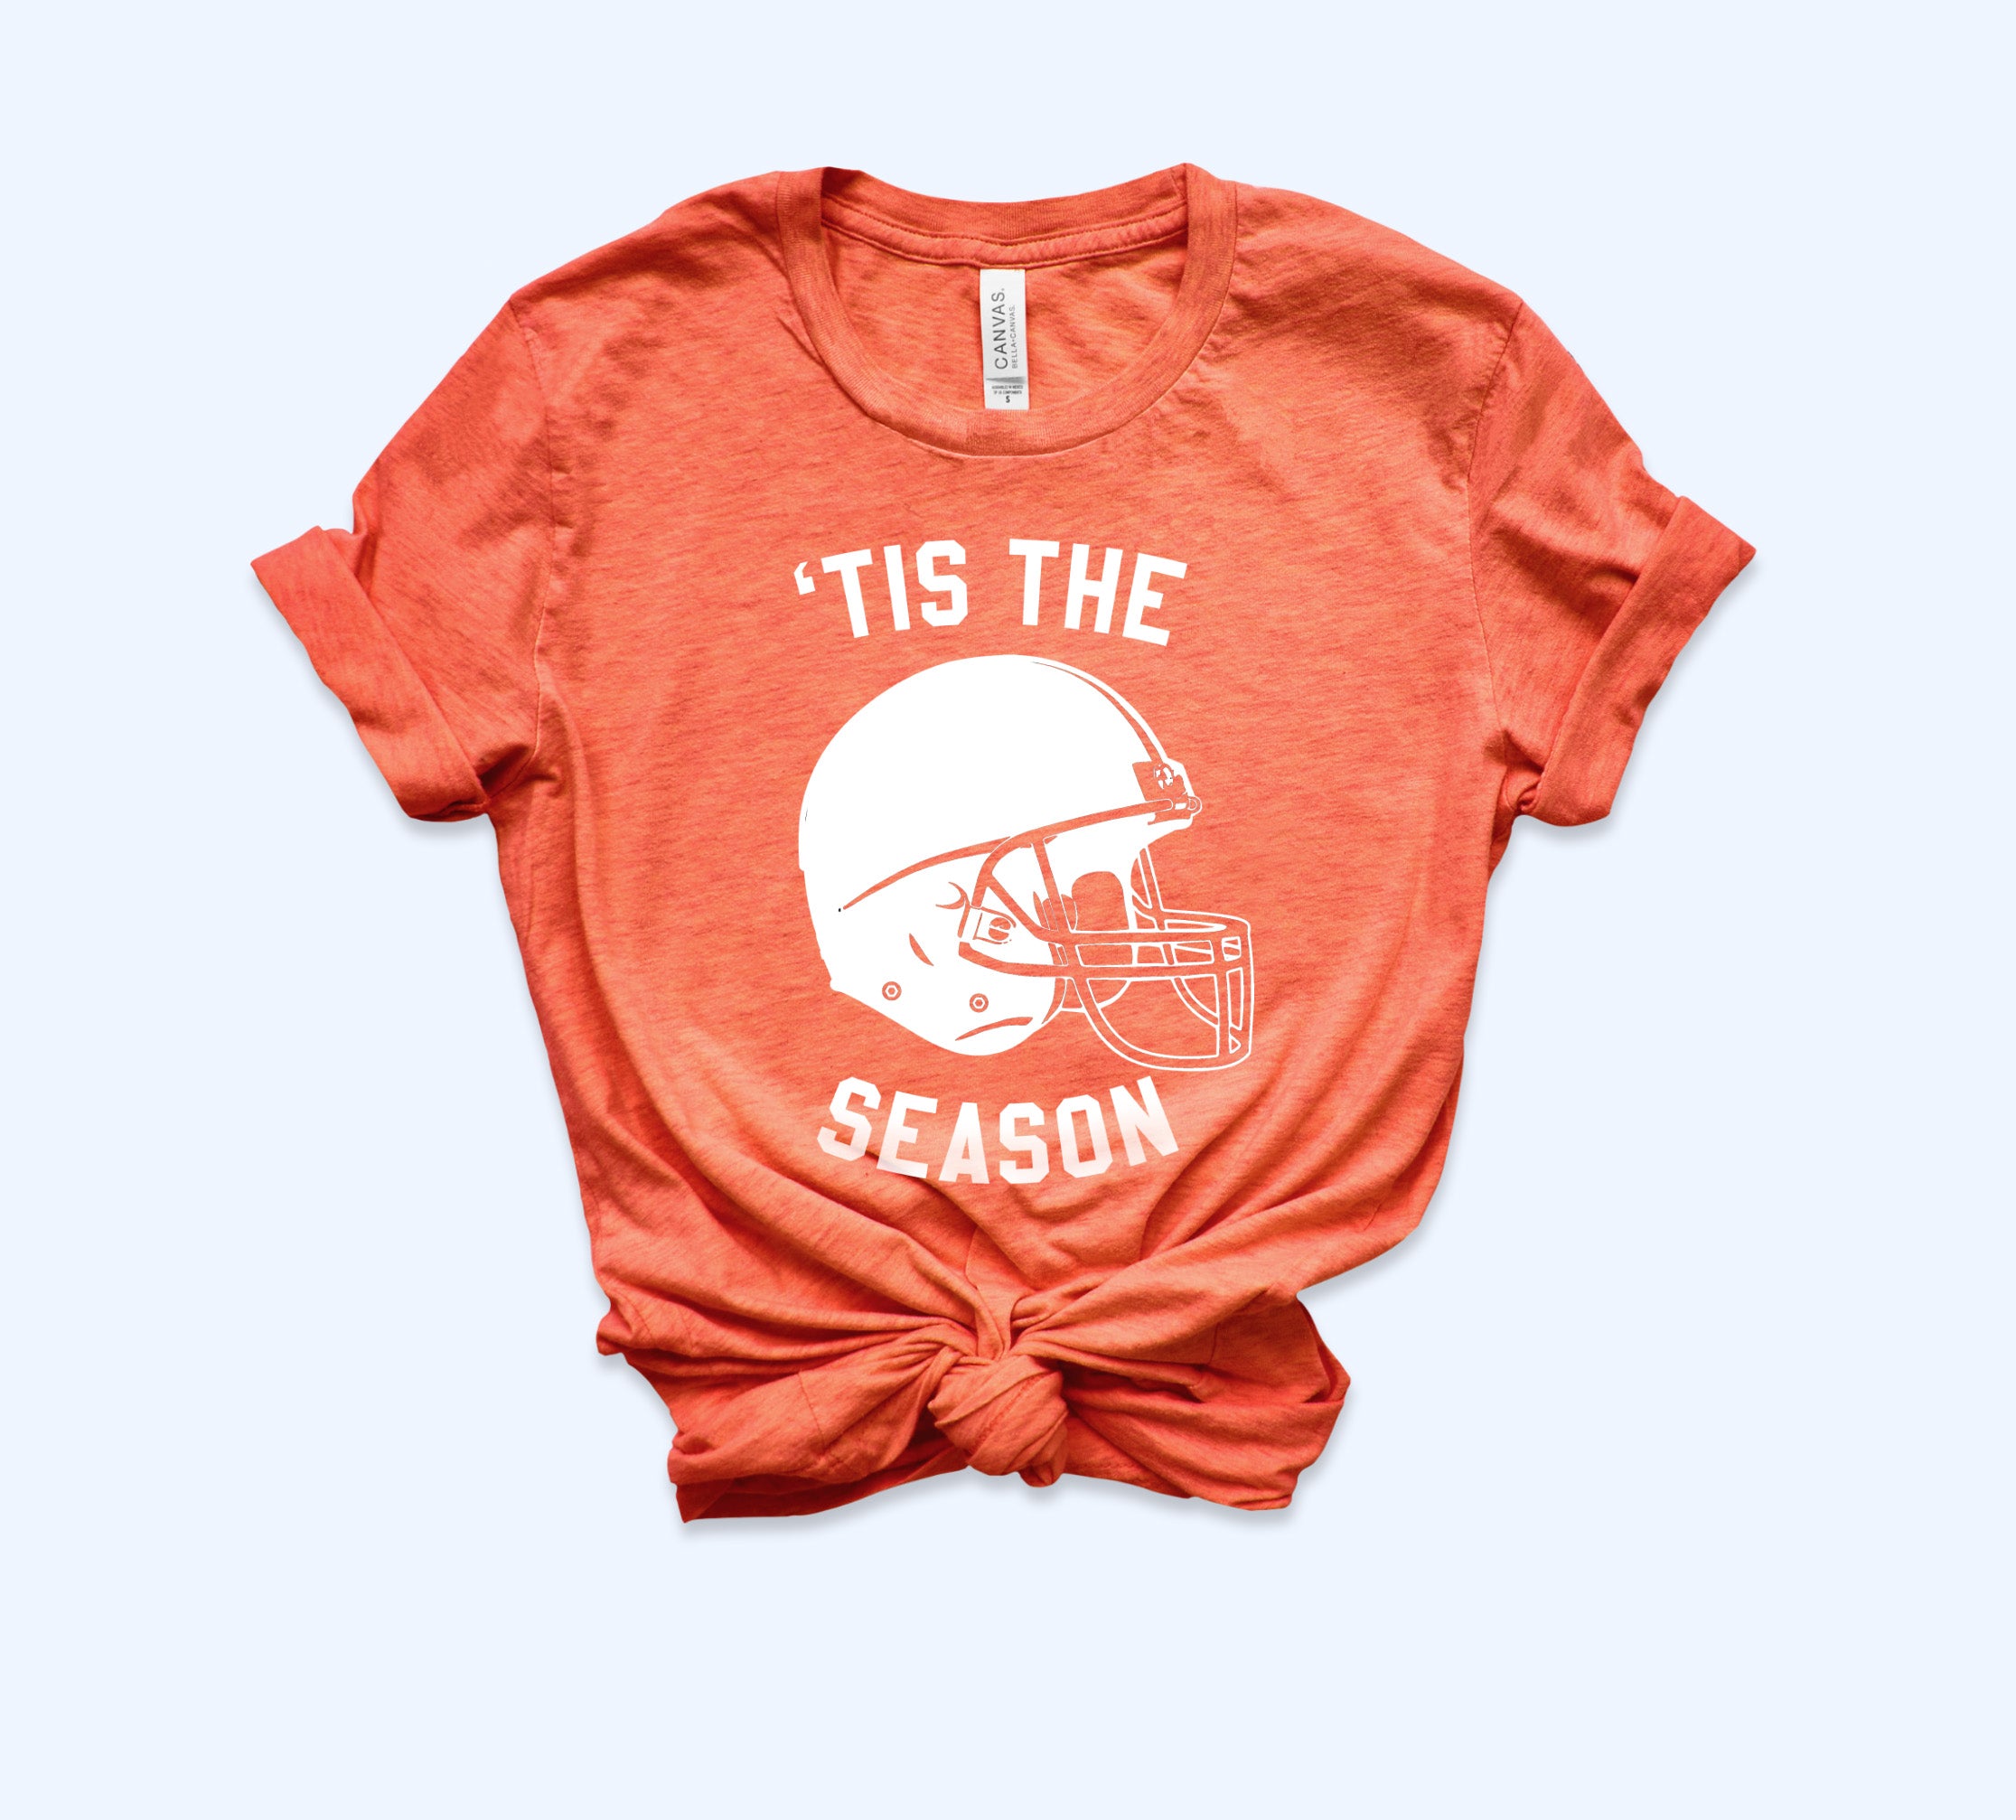 Tis The Season Shirt - Super Bowl Tshirt - Football Shirt - HighCiti